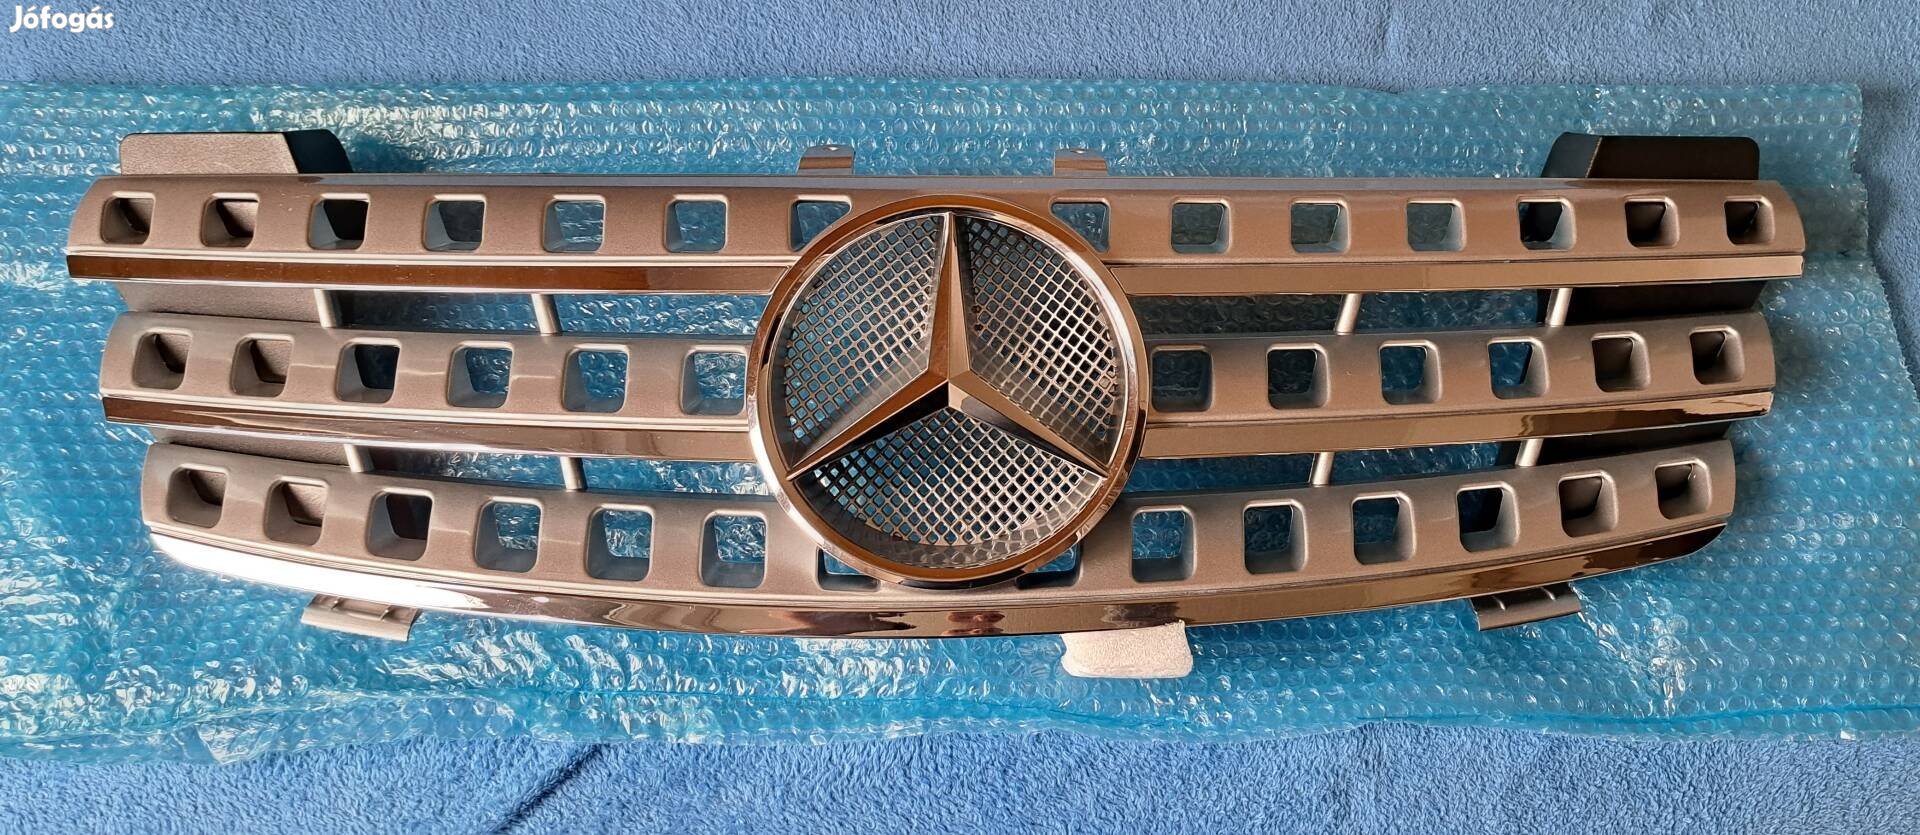 Mercedes ML W164 Új hűtőrács díszrács hűtődíszrács